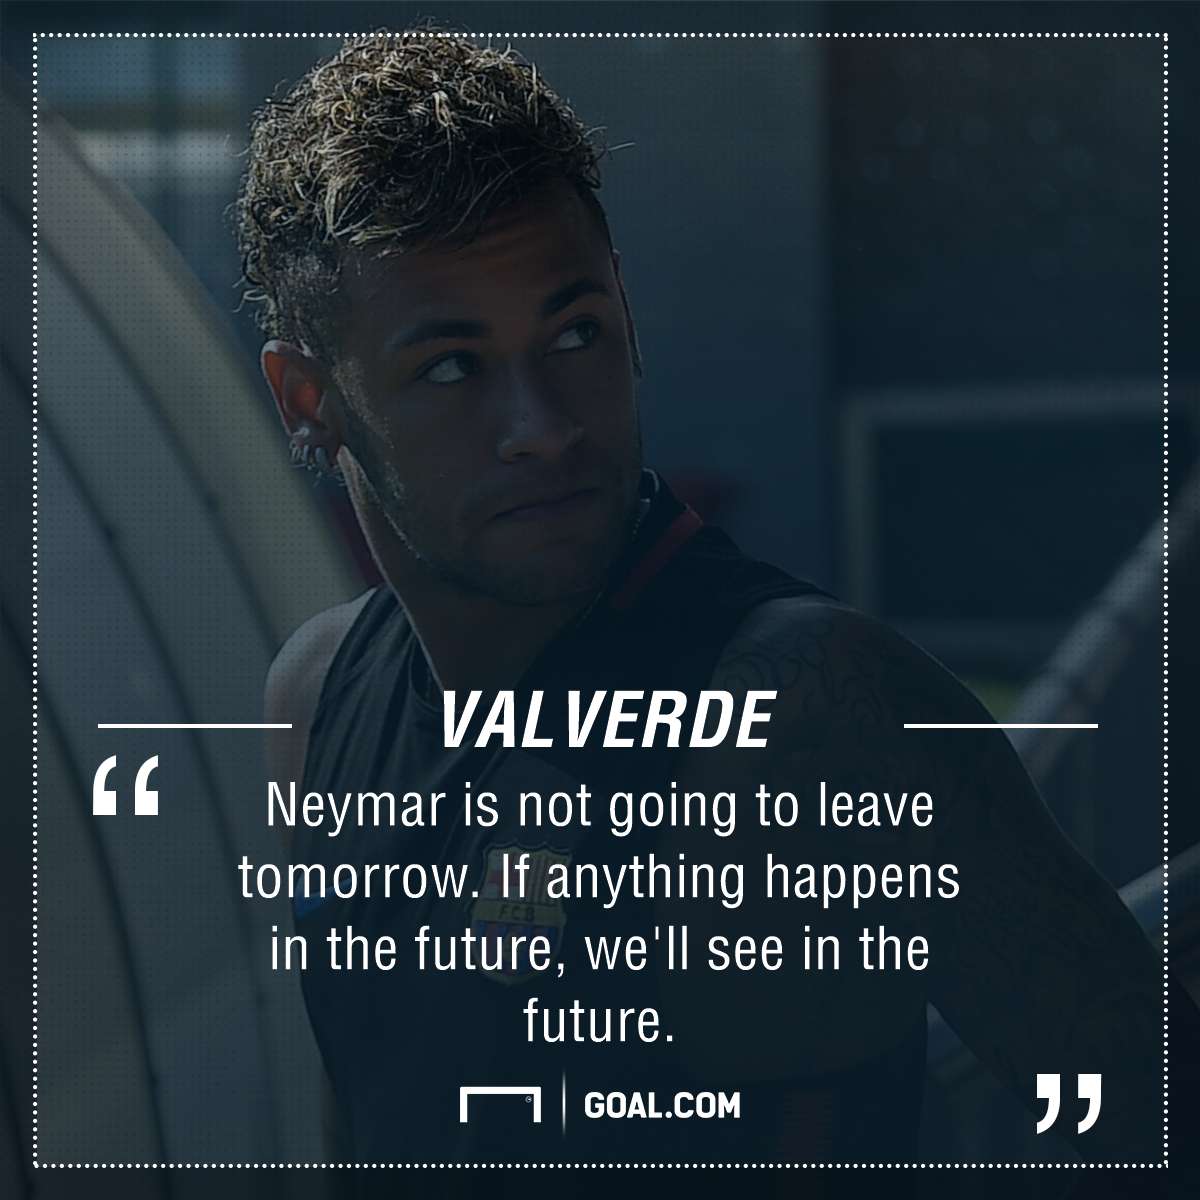 Valverde Neymar GFX